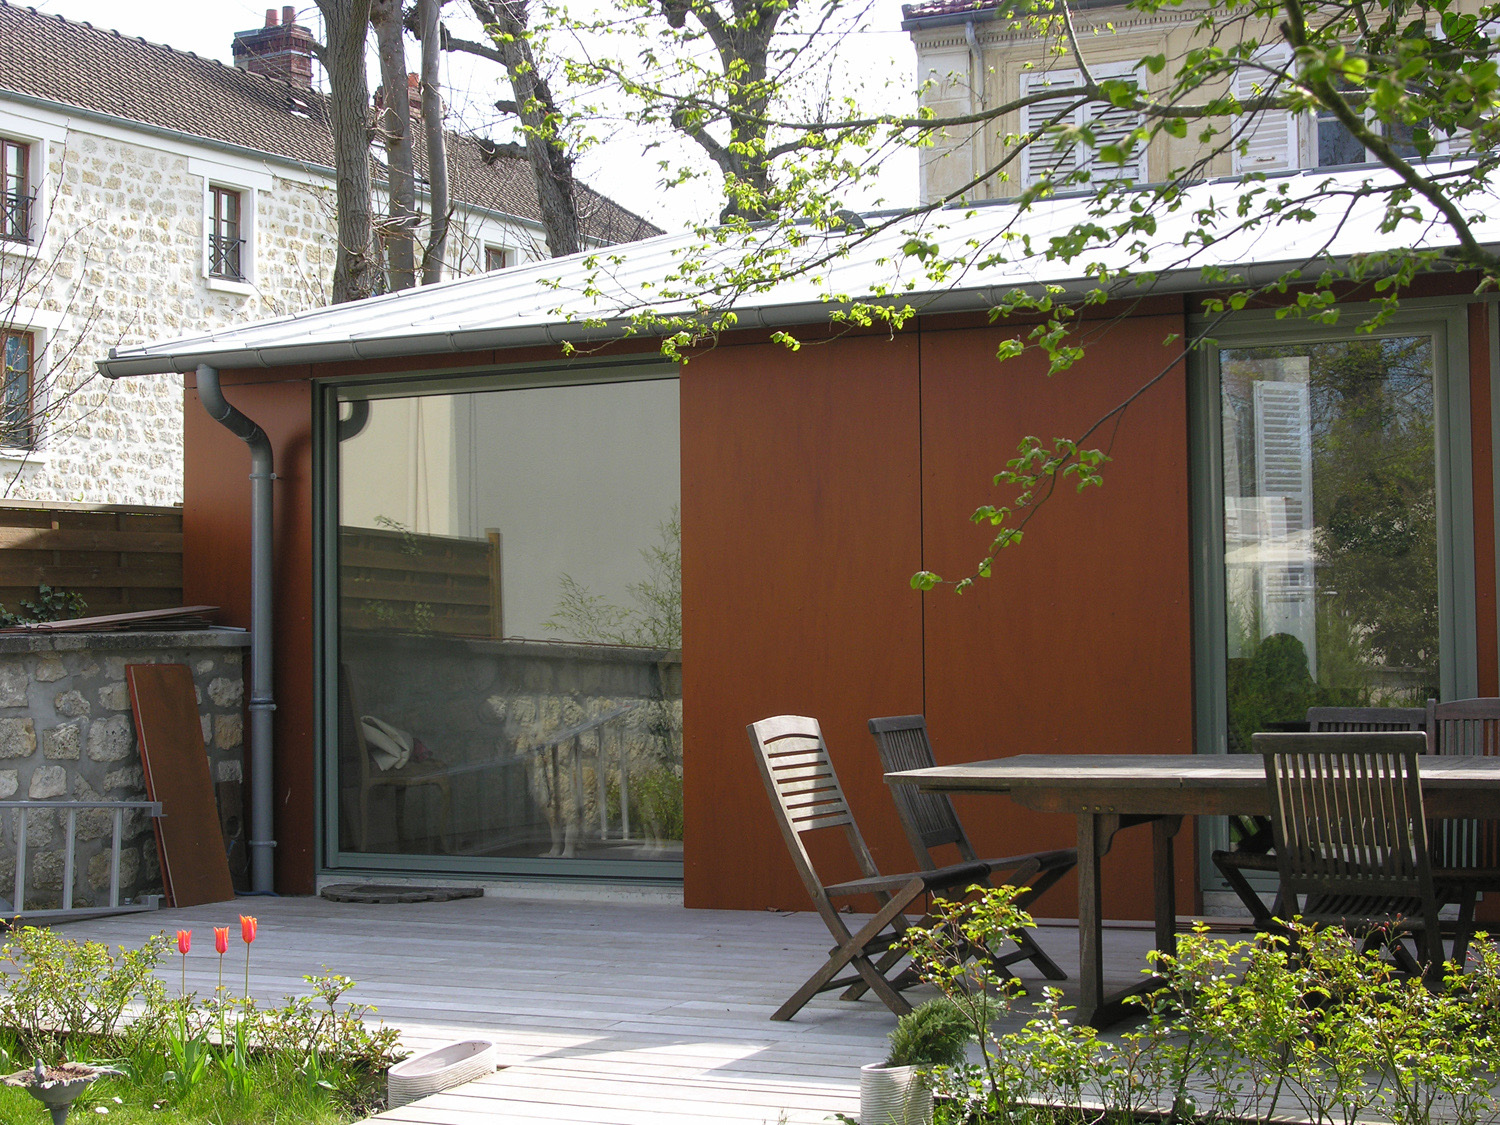 Atelier Prevost architectes - extension d'une maison a l'Isle-adam